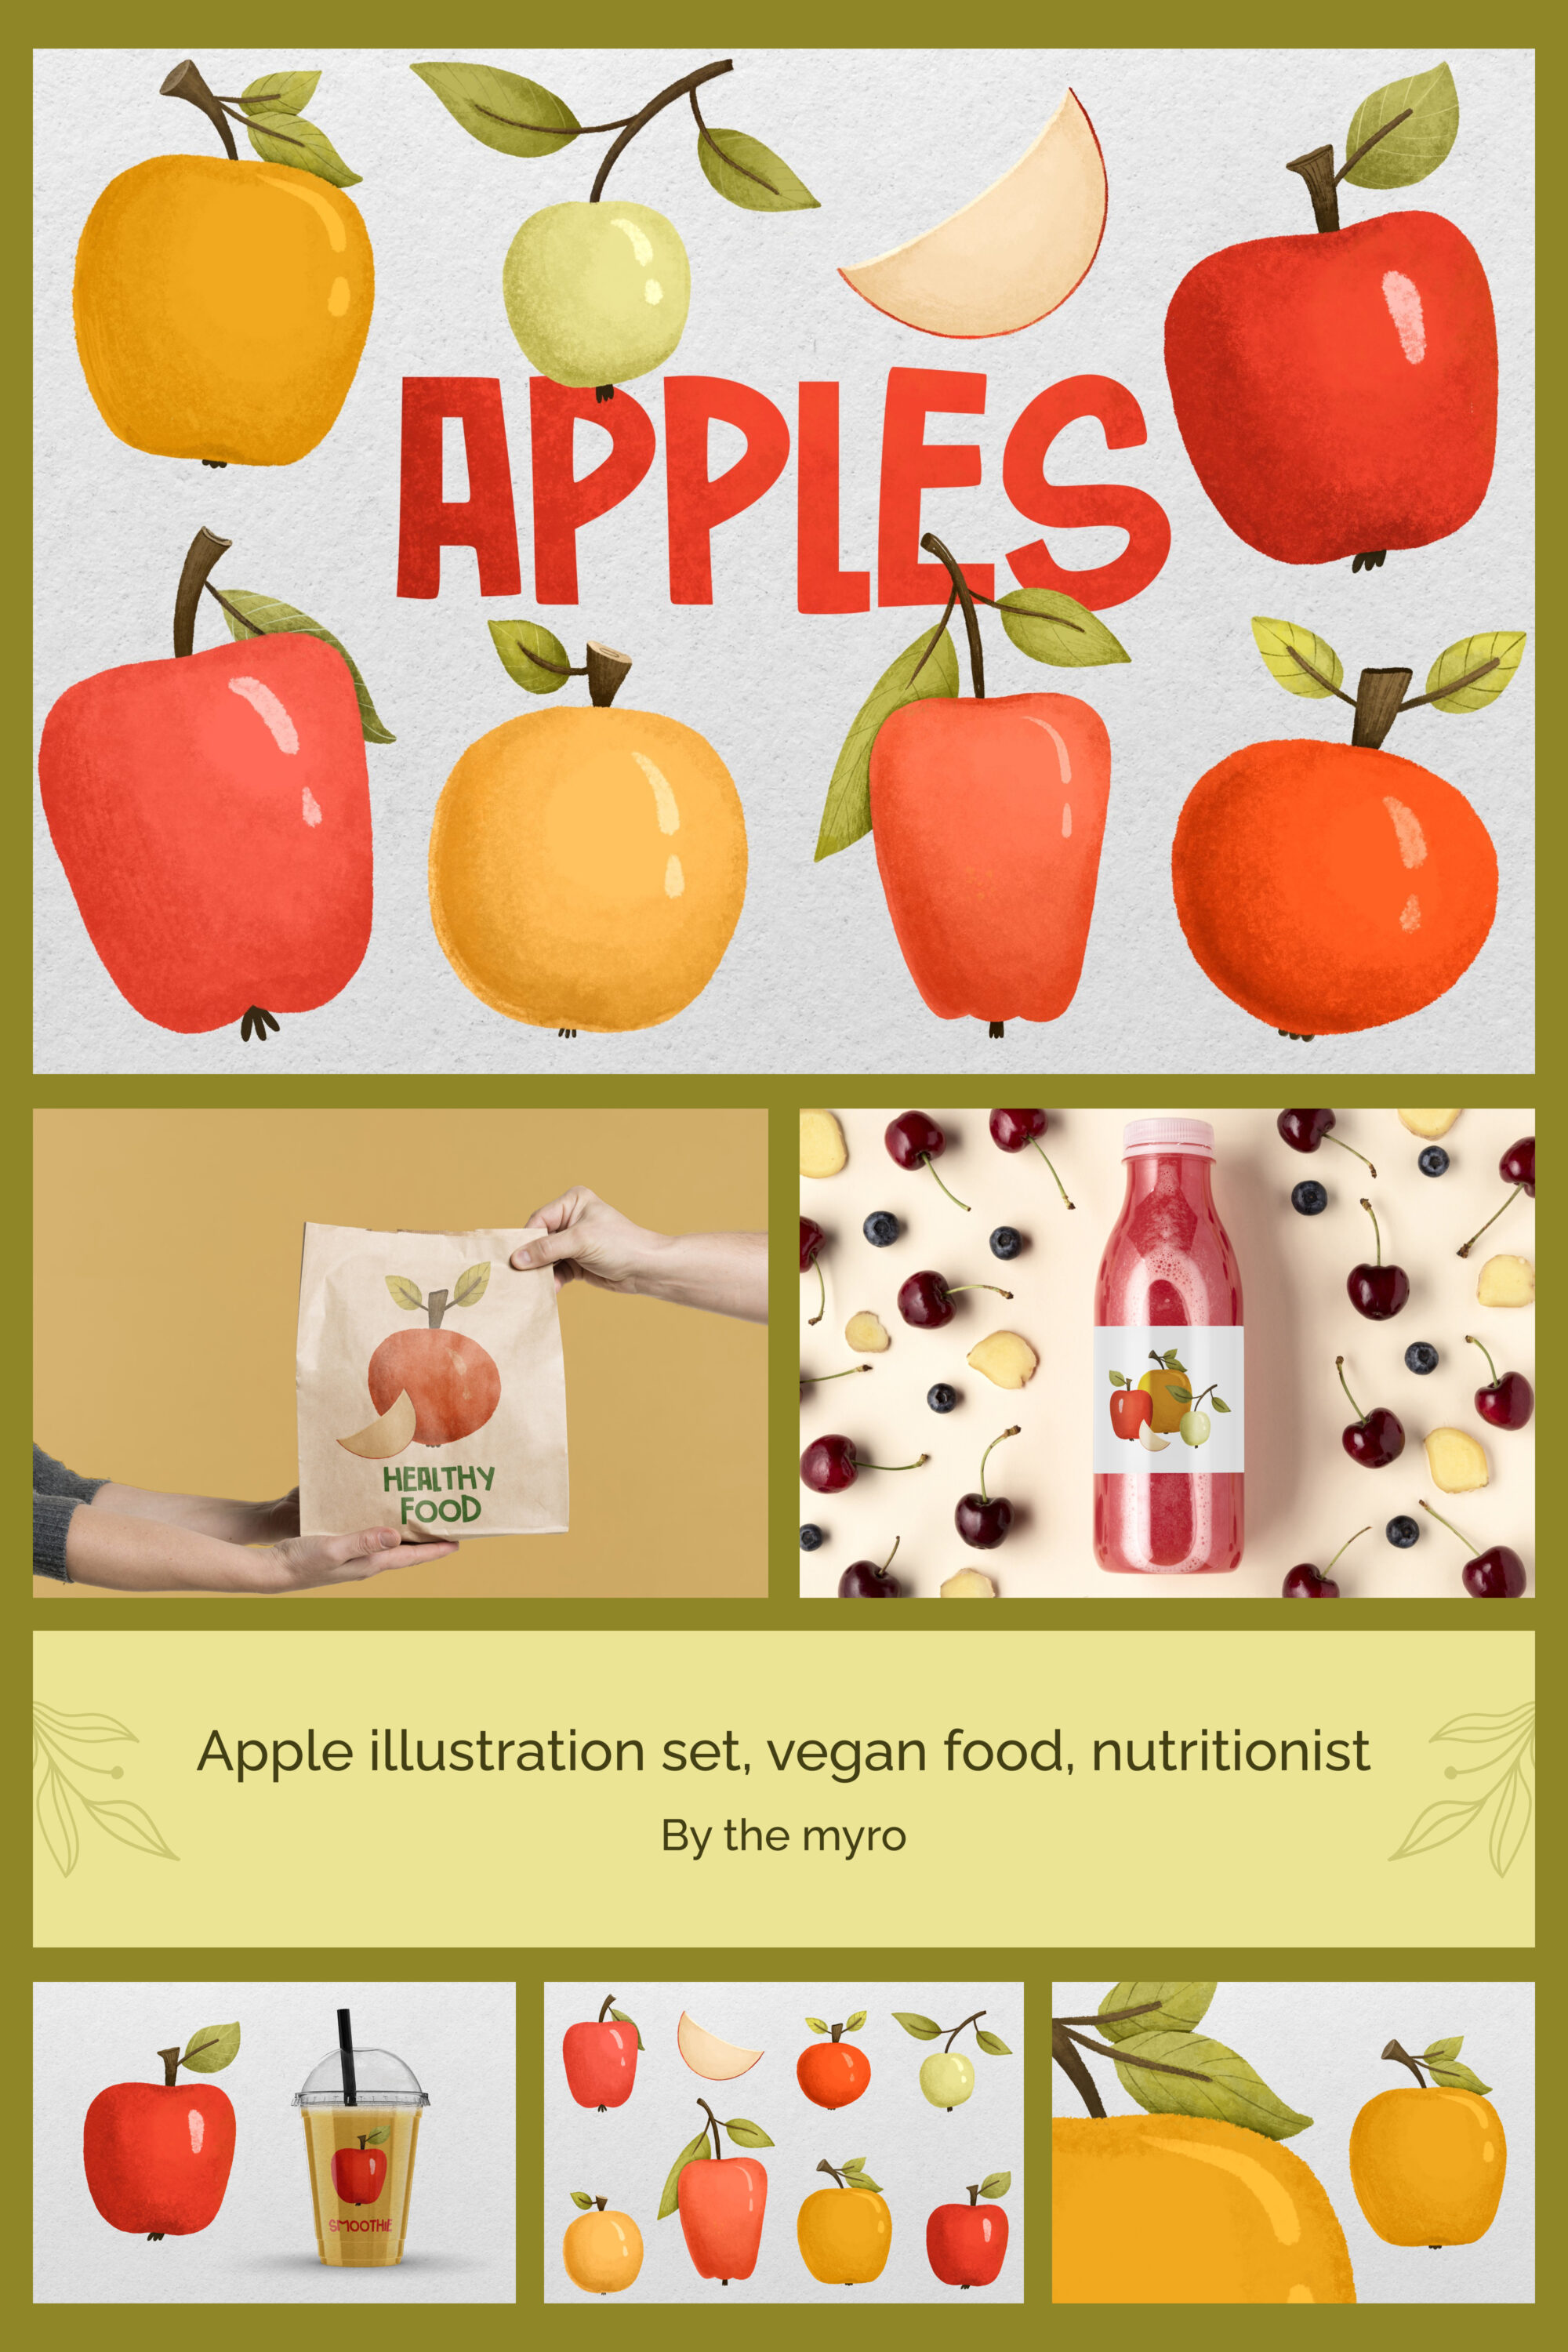 Apple illustration set vegan food nutritionist of pinterest.